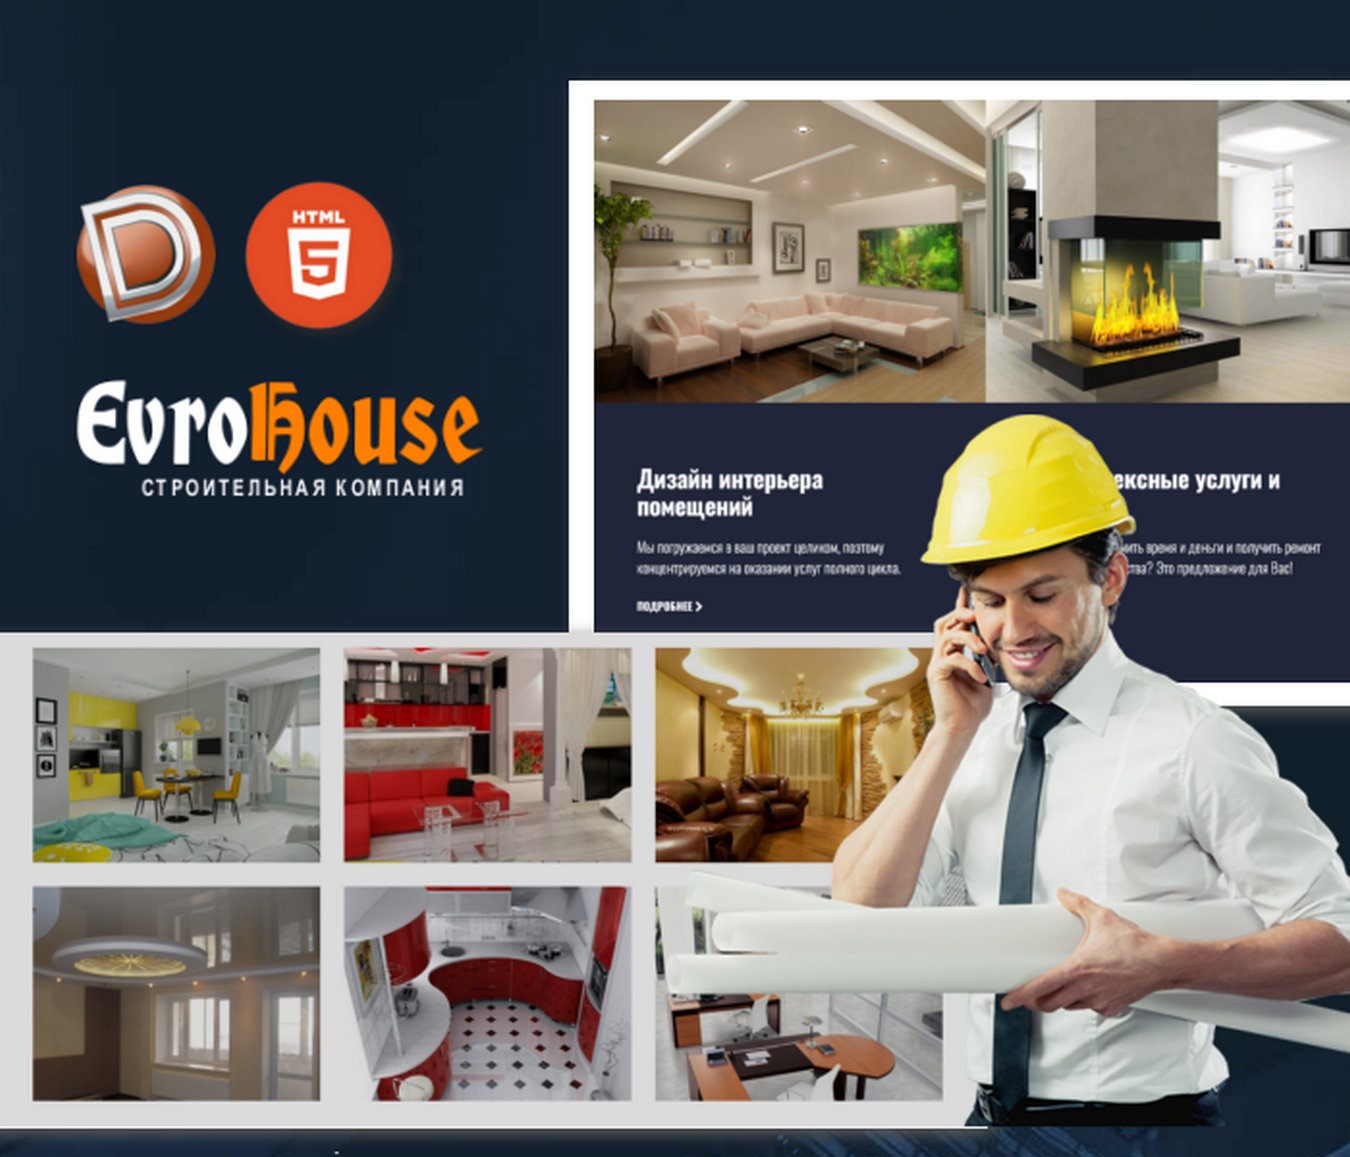 EvroHouse — Шаблон сайта ремонта квартир Dle 15.1